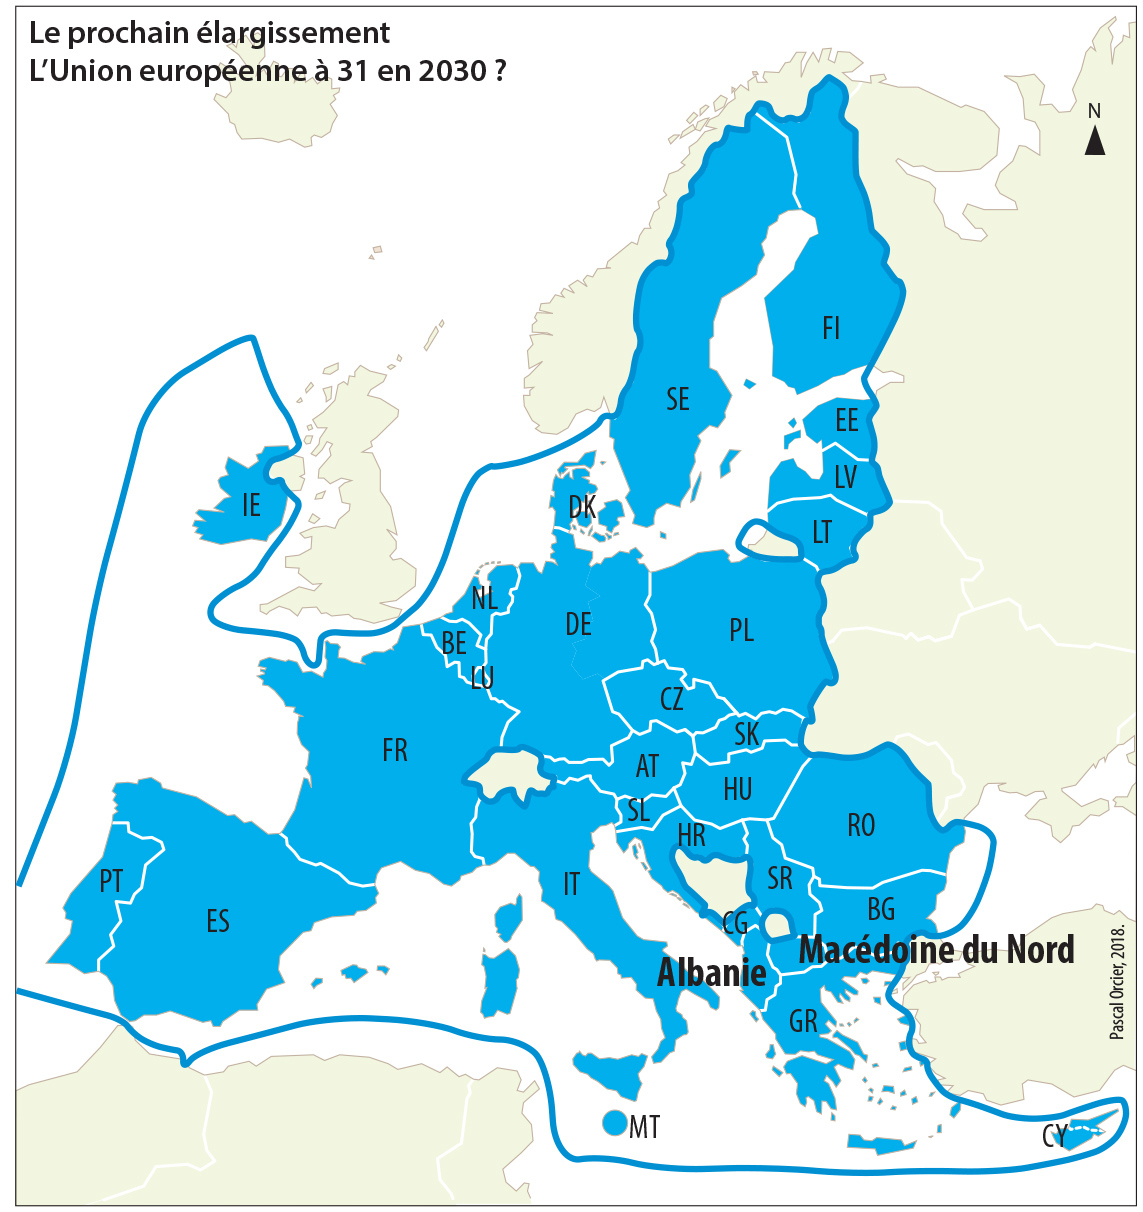 L'europe Entre Associations, Alliances Et Partenariats. L serapportantà Tout Les Pays De L Union Européenne Et Leur Capital